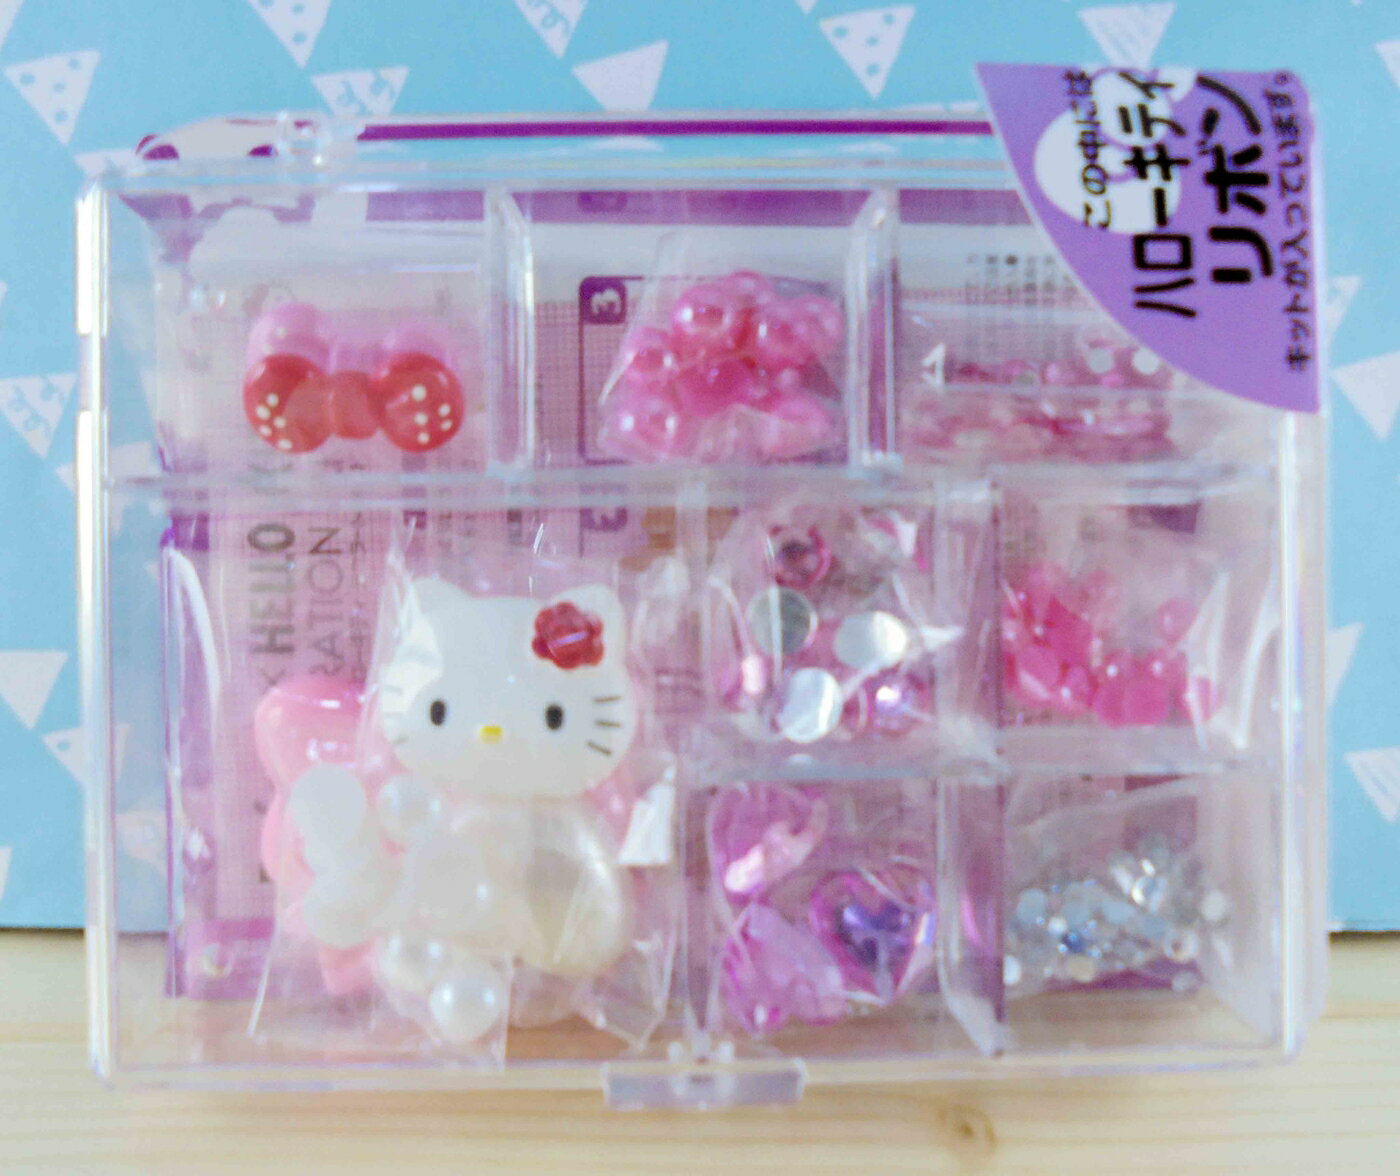 【震撼精品百貨】Hello Kitty 凱蒂貓 KITTY DIY組-手機DIY-紅色 震撼日式精品百貨